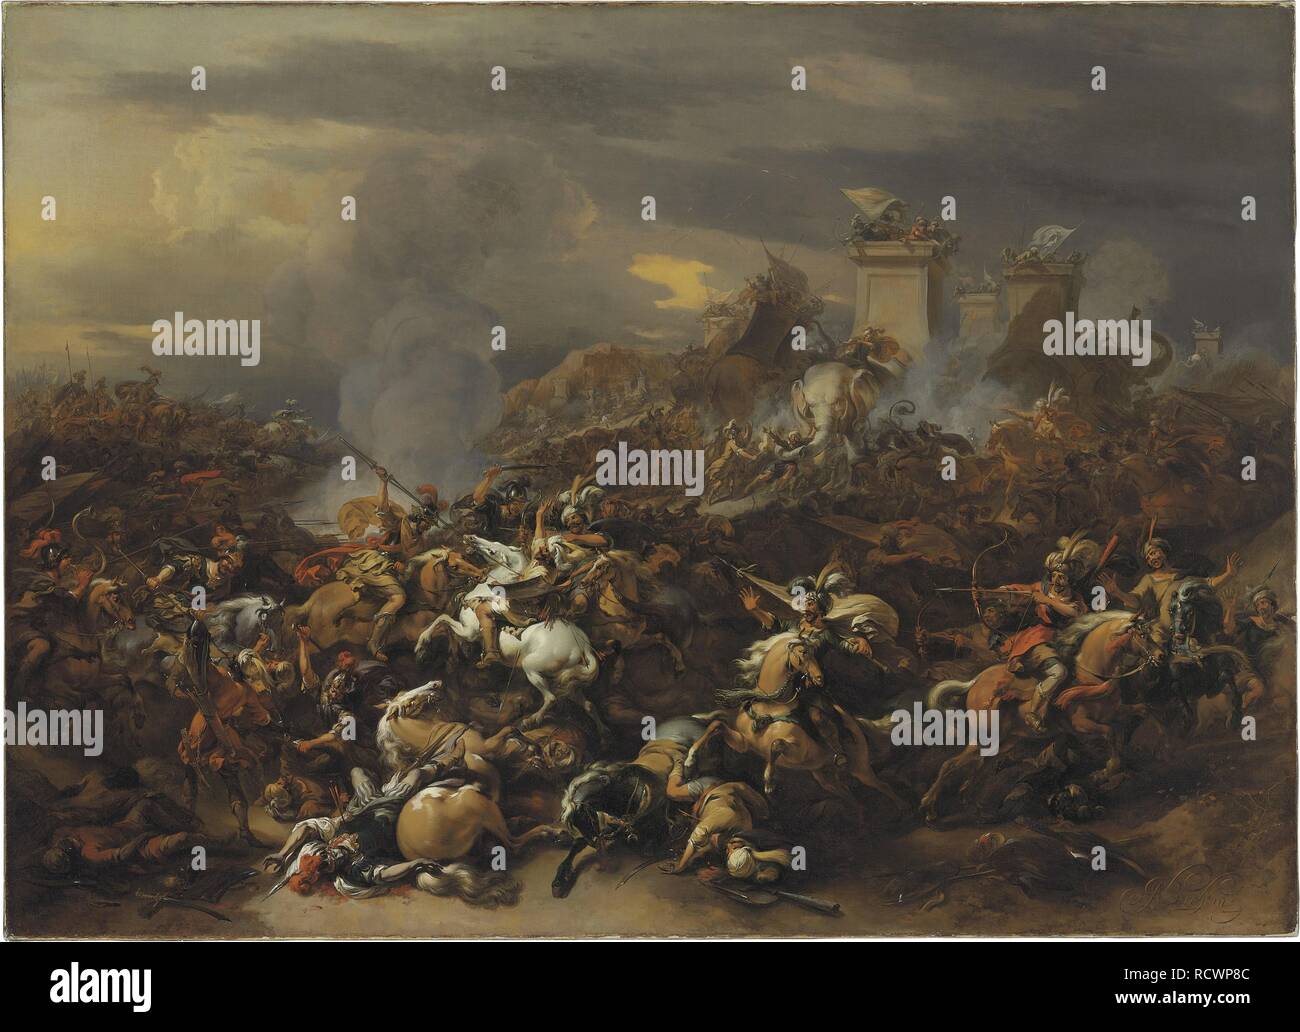 La batalla de Alejandro Magno contra el rey Porus. Museo: Colección privada. Autor: Berchem, Nicolaes Pietersz (Claes), el anciano. Foto de stock